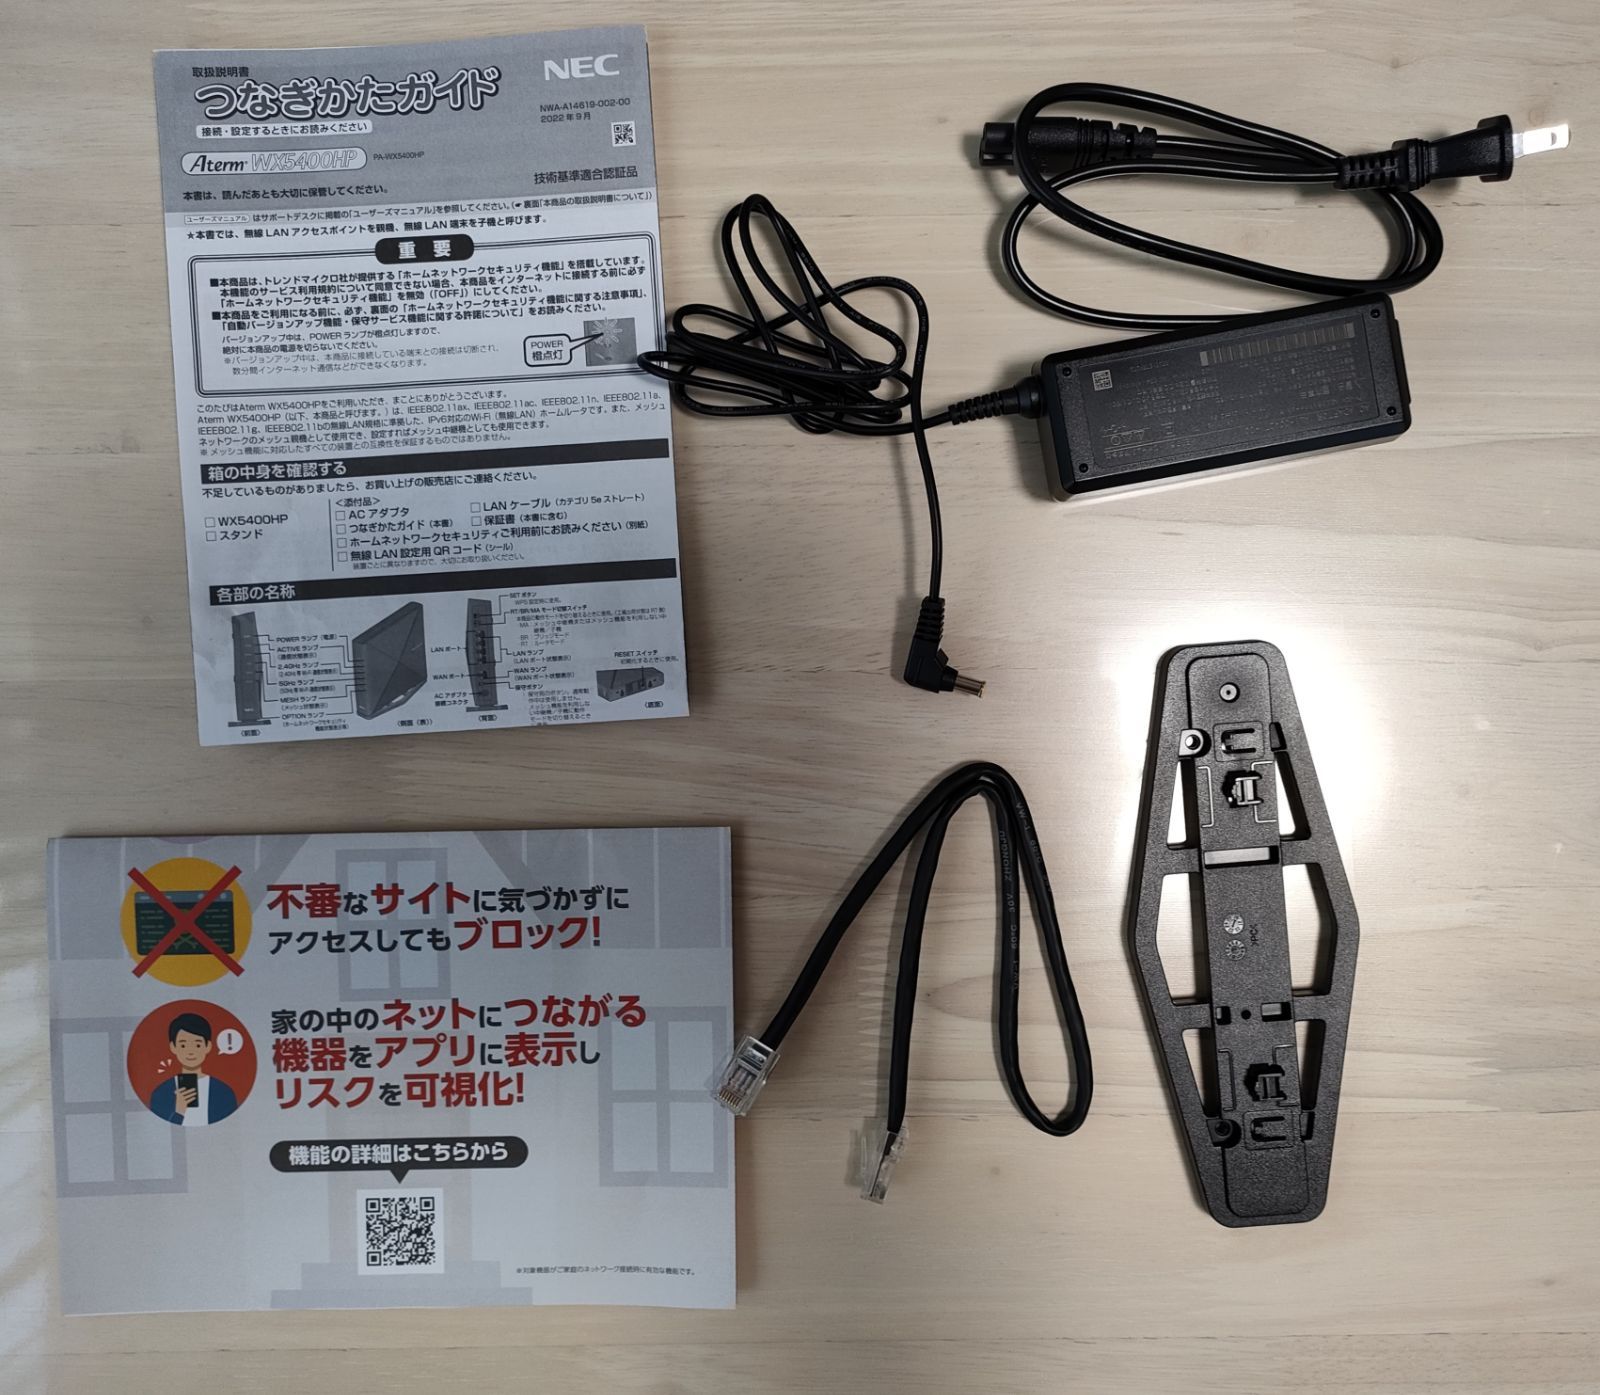 誠実 NEC PA-WX5400HP 無線LANルータ Aterm ブラック